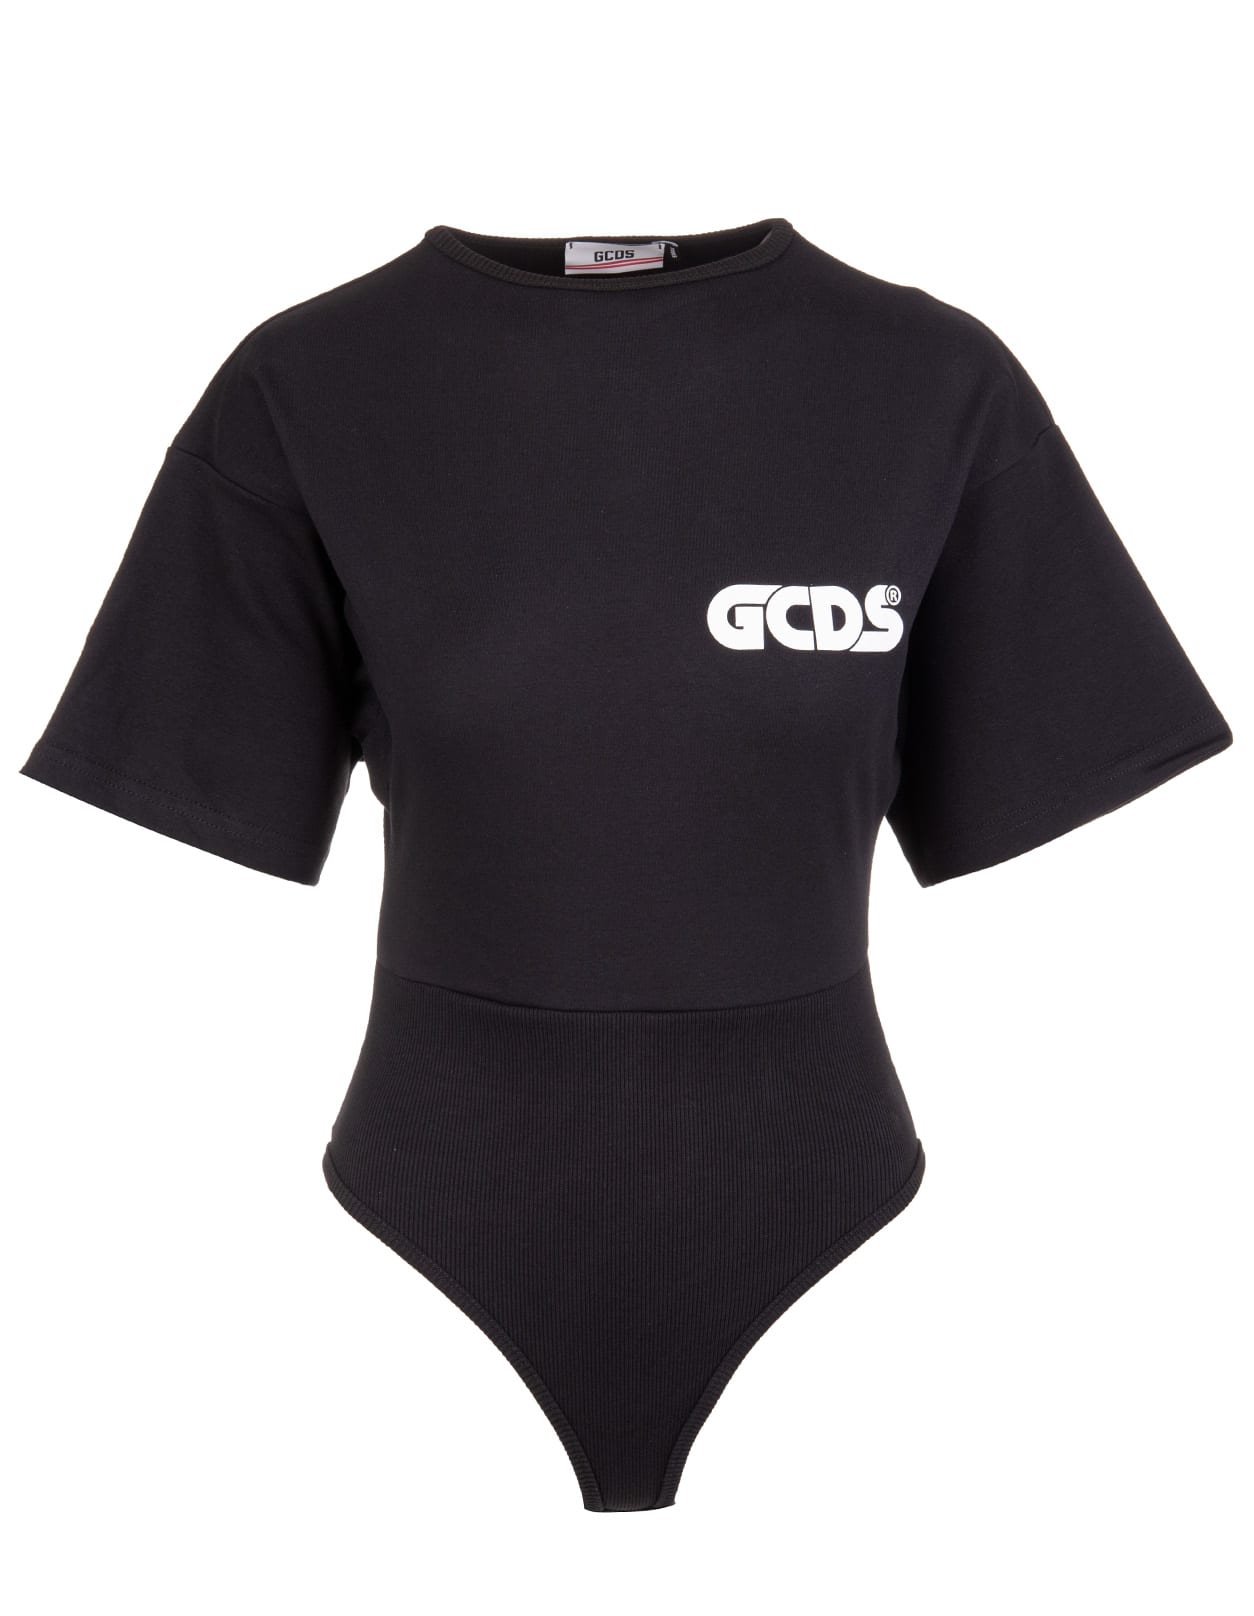 GCDS Black Body With Contrast Logo